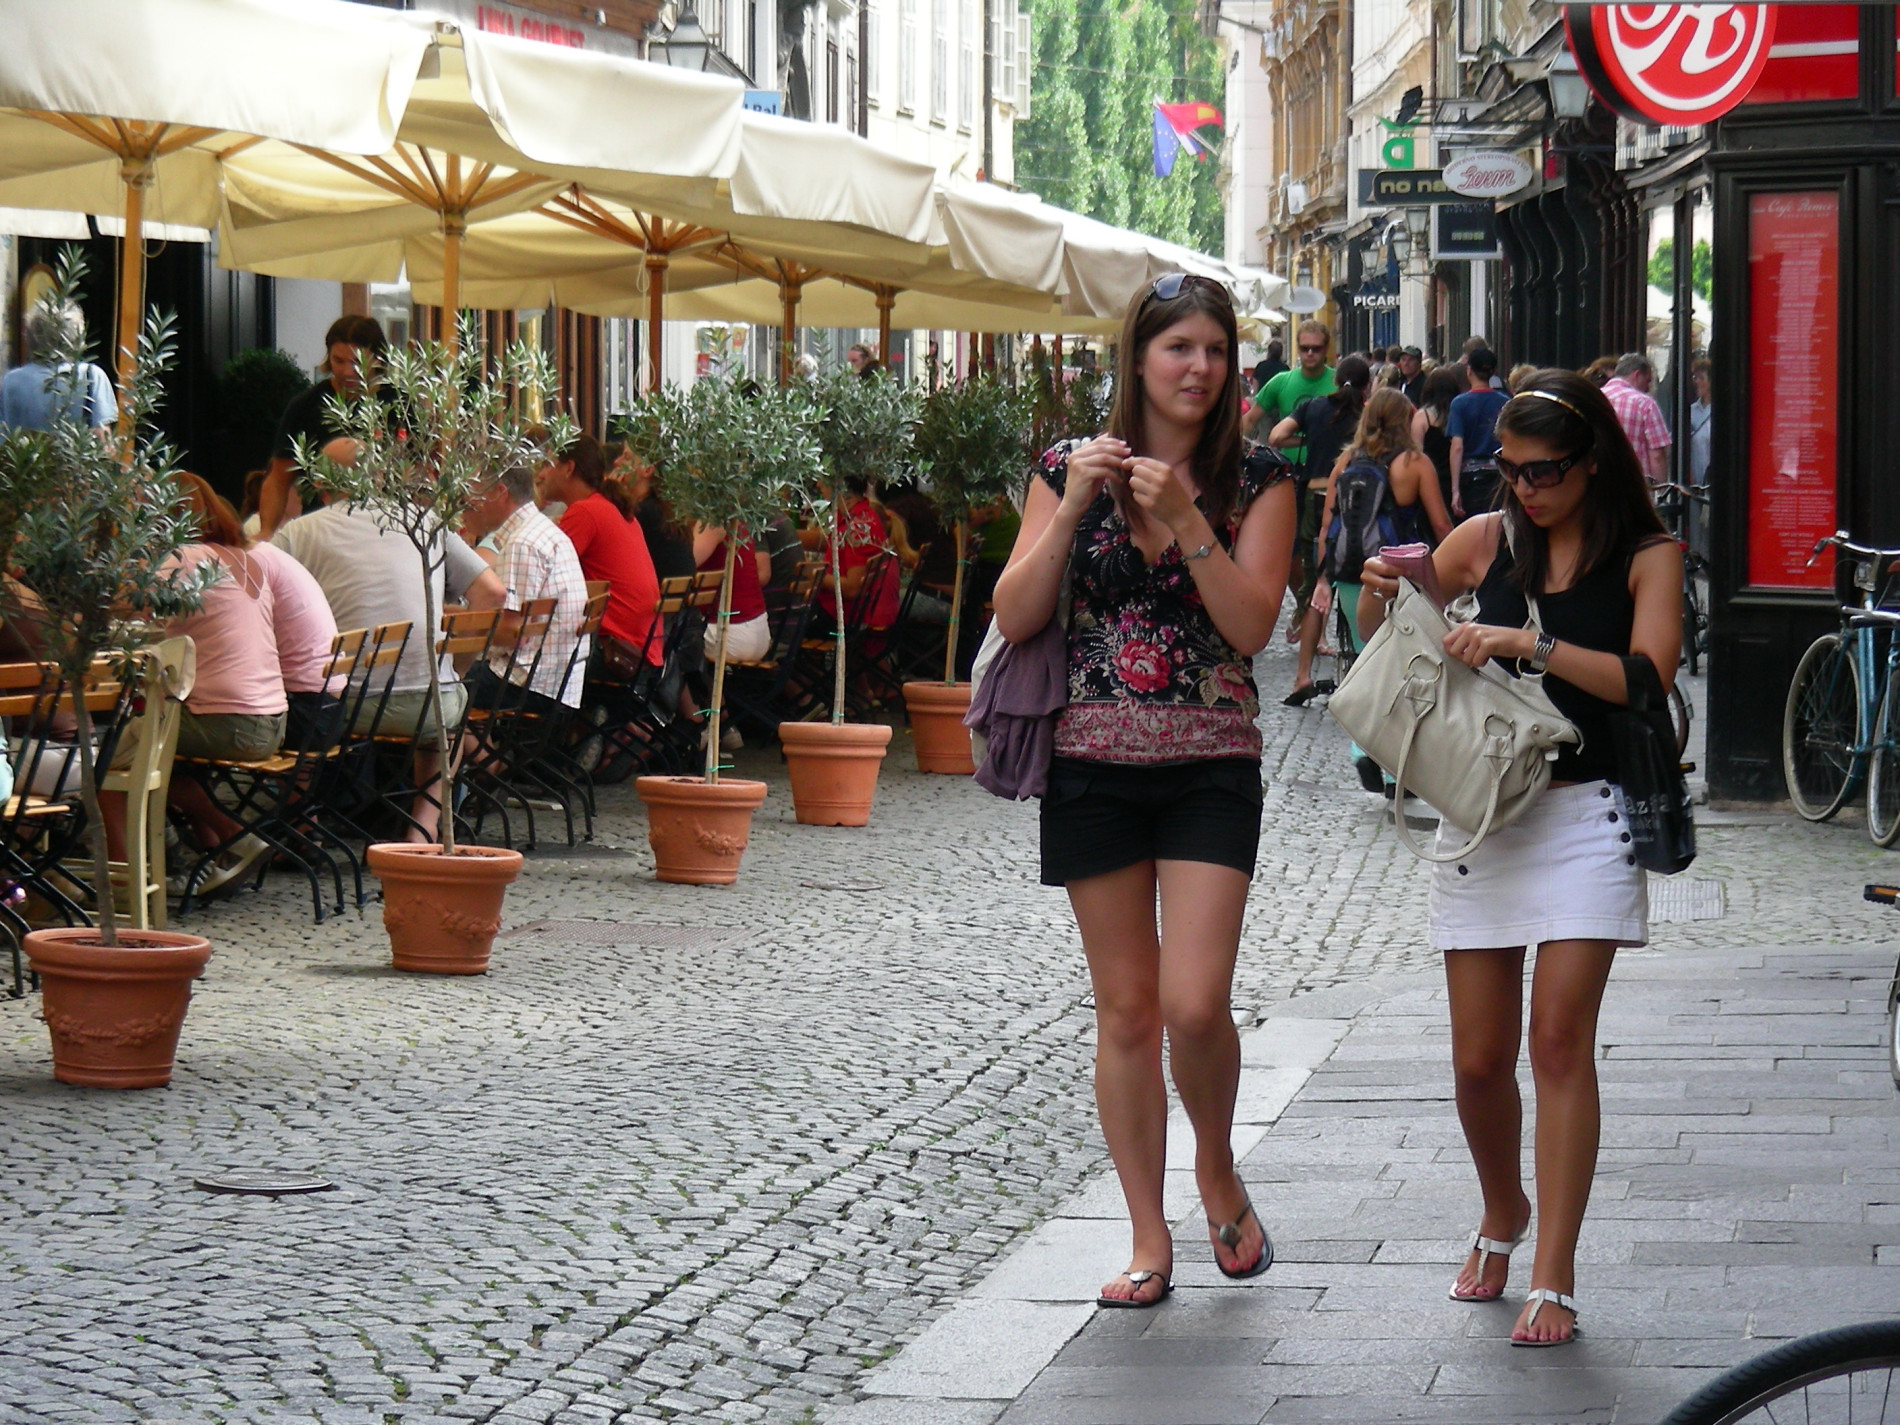 Ljubljana vzpostavlja profesionalni mestni marketing, glavni poudarek na obogatitvi trgovske ponudbe mestnega jedra